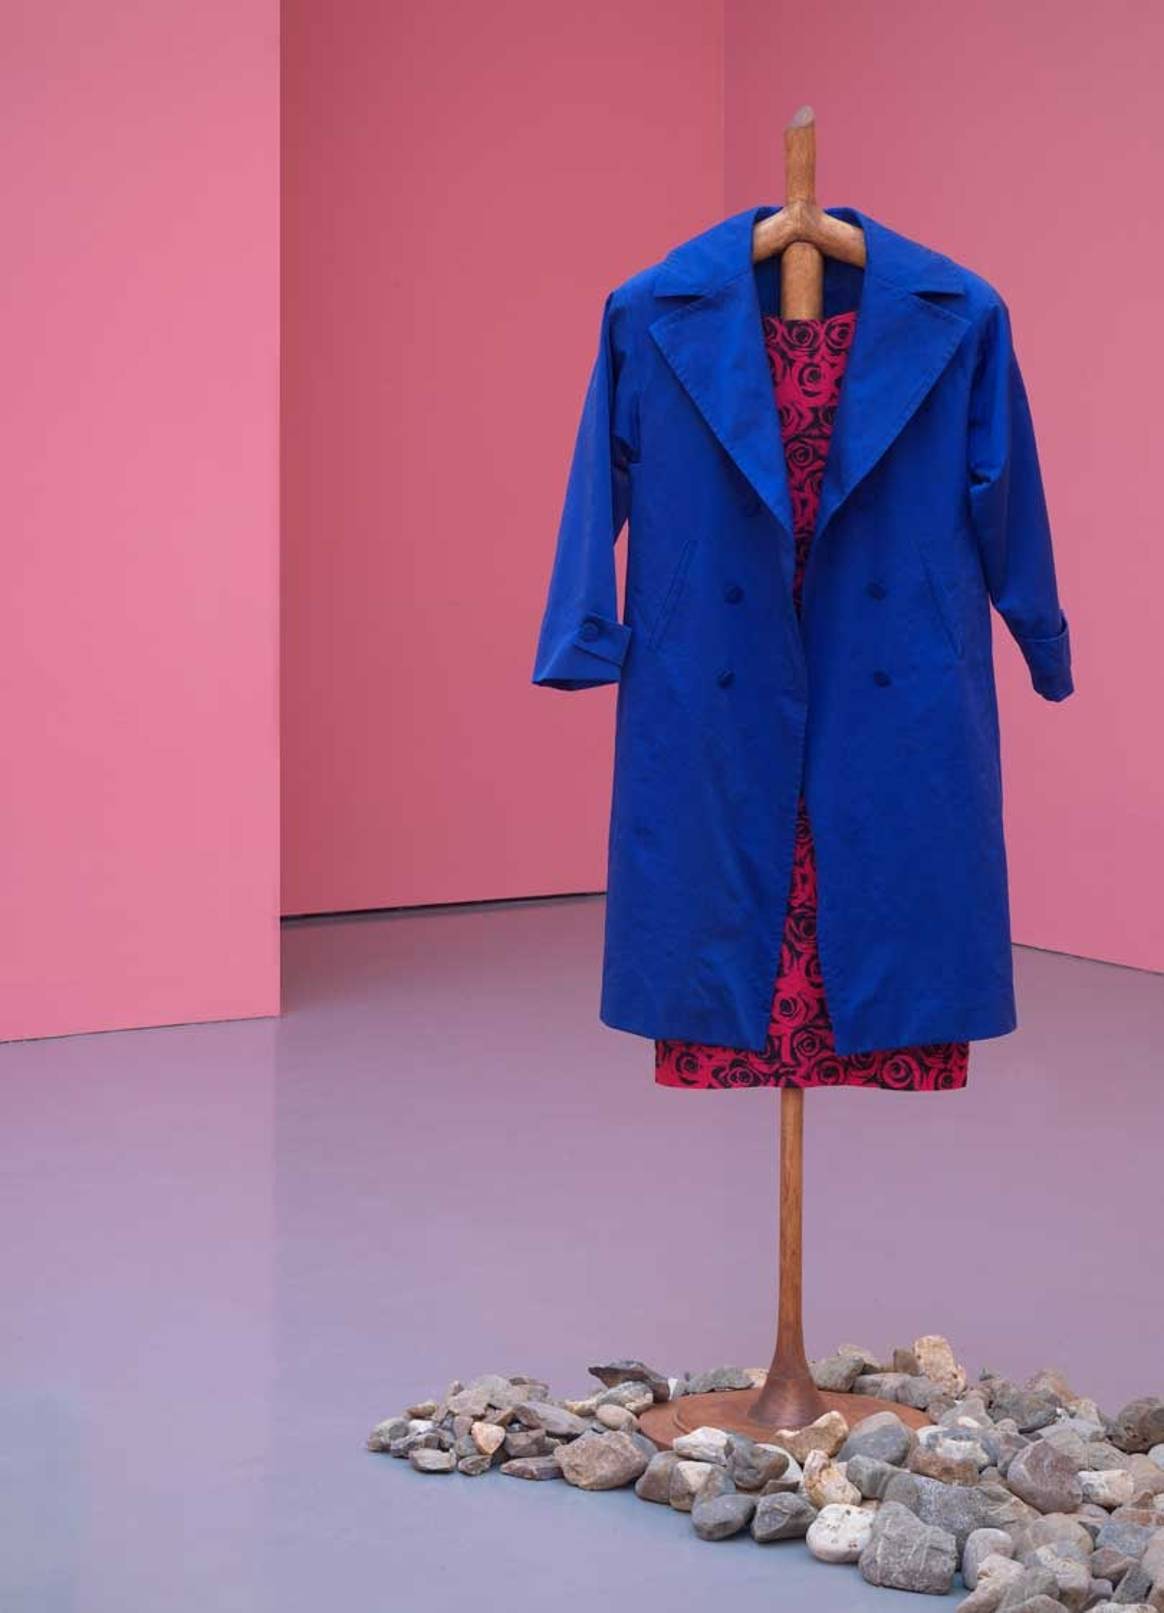 Kijken: Kunstenaar gebruikt kleding Agnès B. voor kunstinstallatie